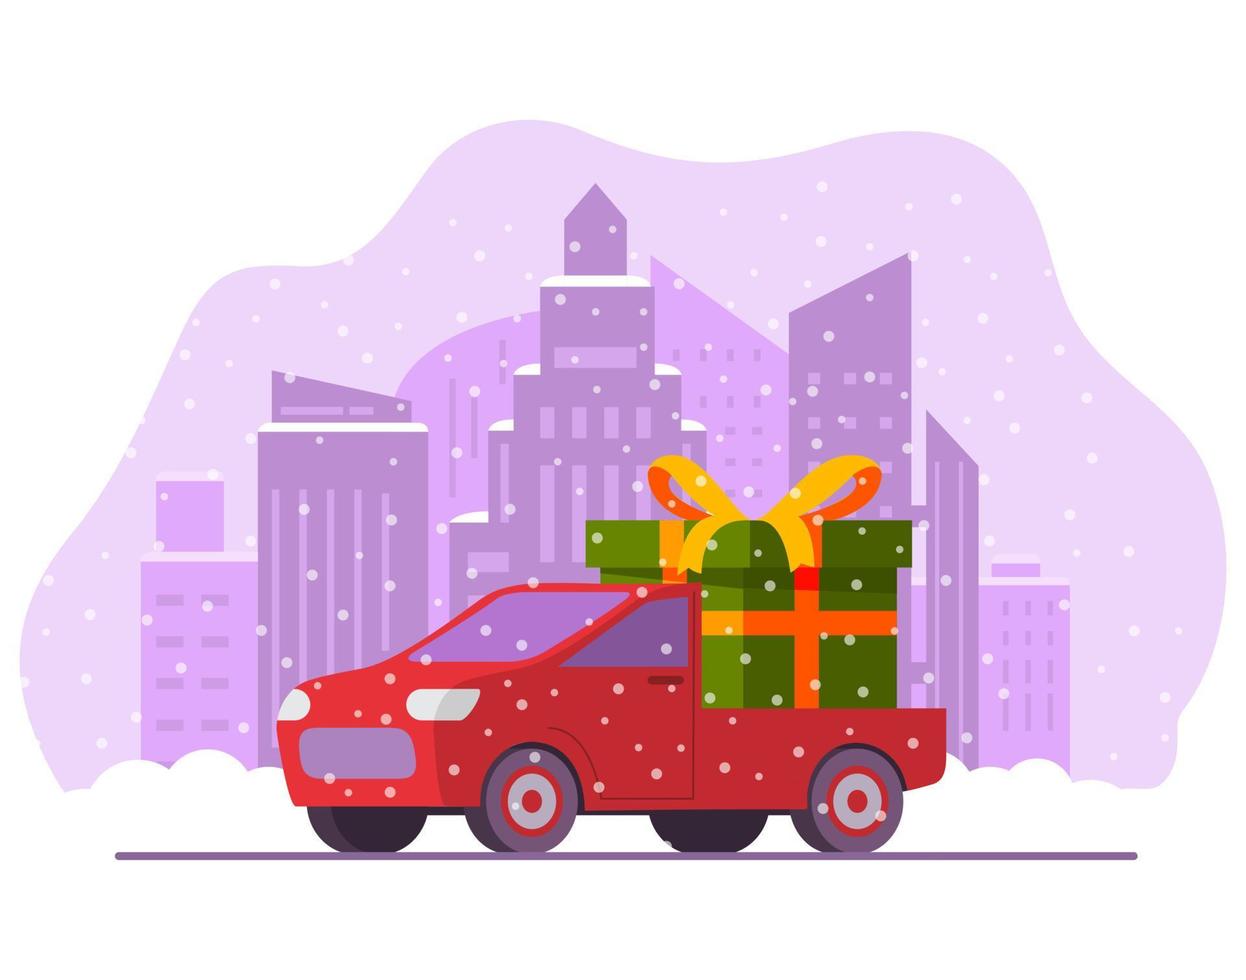 camion rouge de livraison de noël avec boîte-cadeau verte.carte postale de bonne année.bannière de noël festive.illustration vectorielle plate.vue latérale du véhicule. ville d'hiver avec des chutes de neige. vecteur